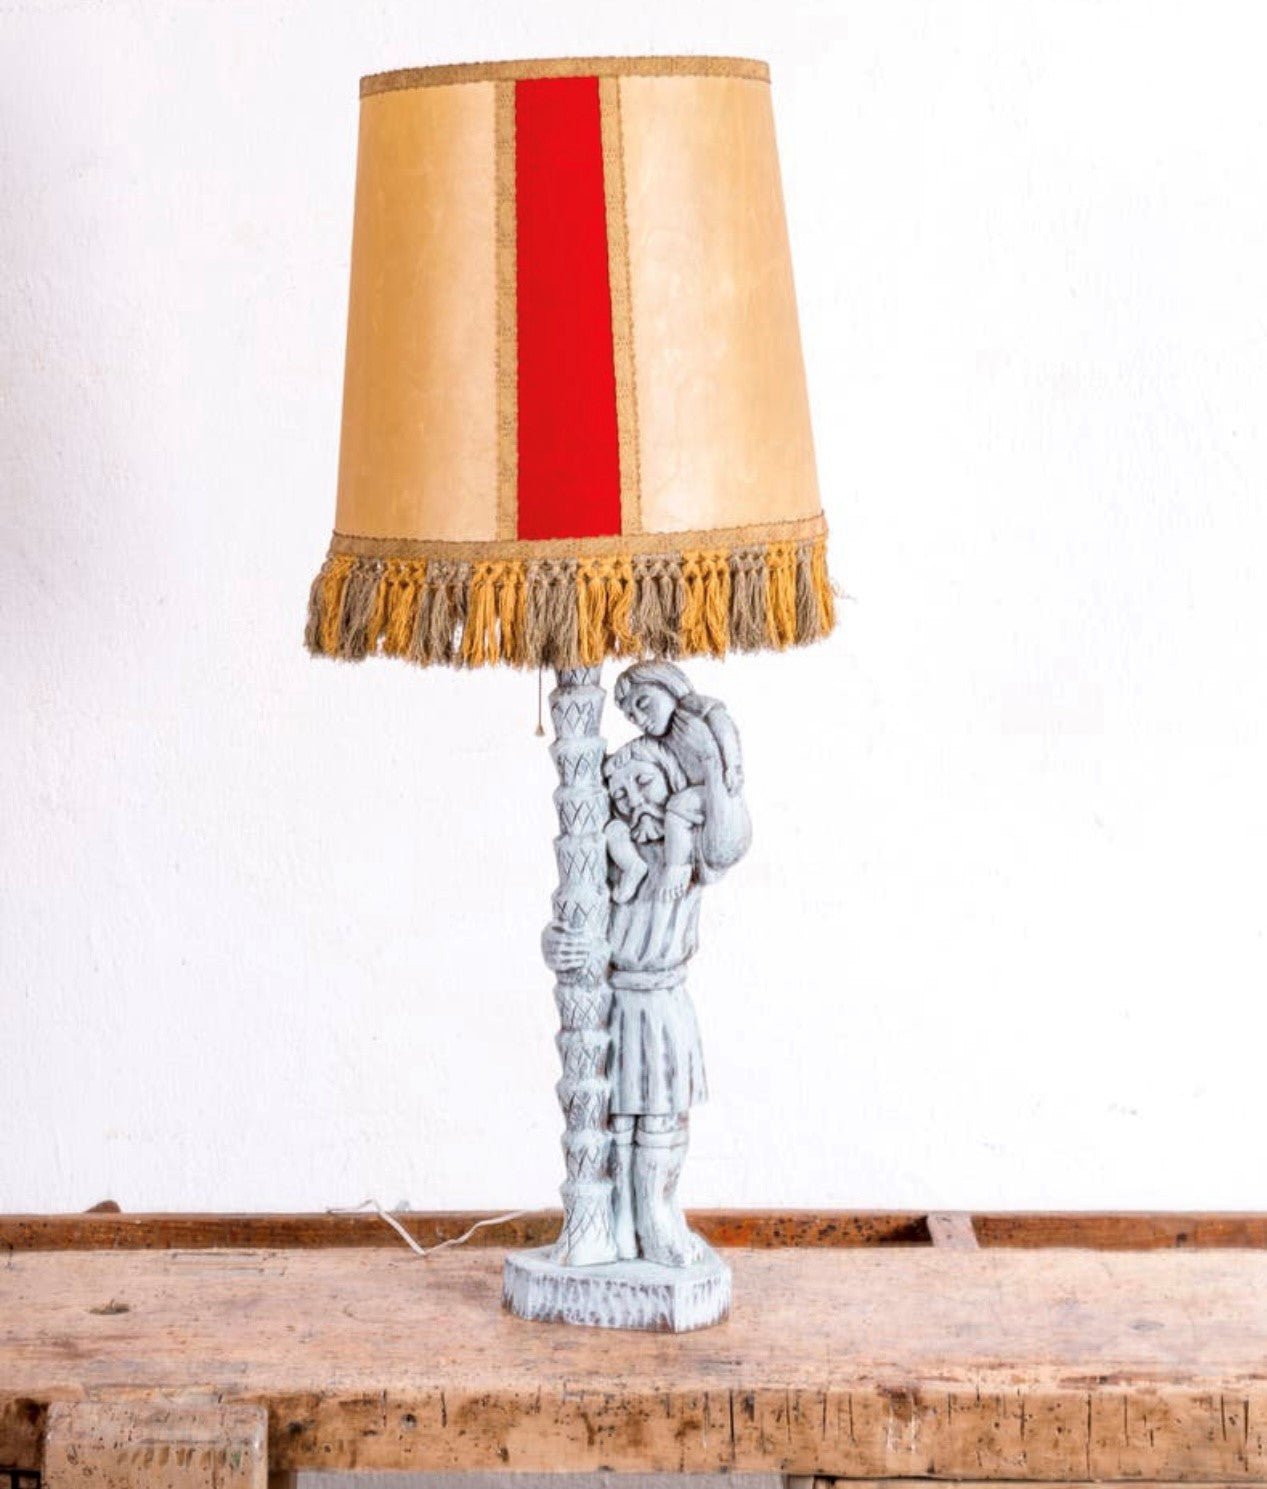 Lámpara de sobremesa antigua tallada - Antique arte y decoracion